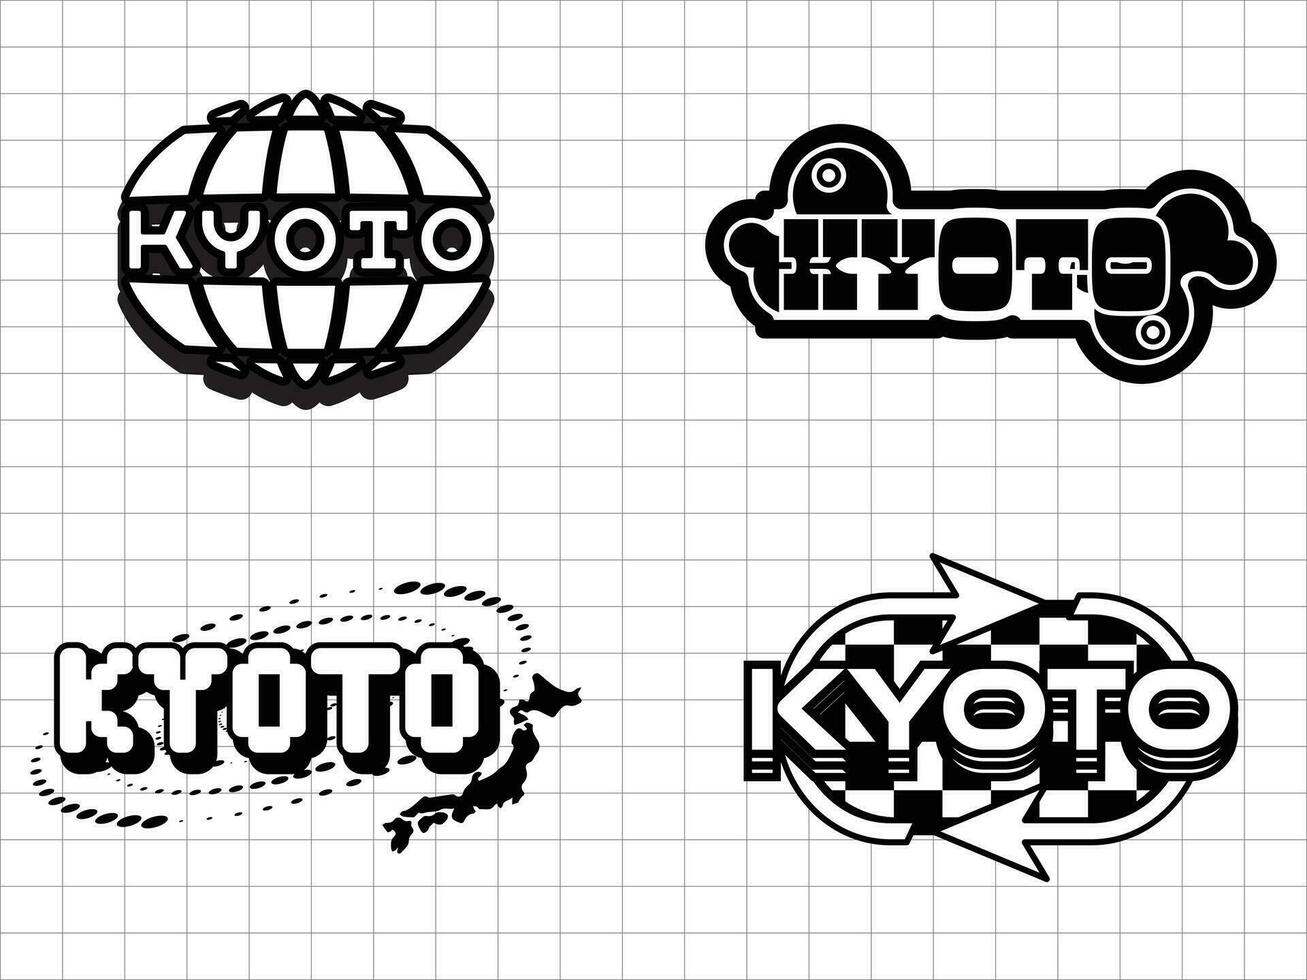 Kyoto retro futuristisch zum t Hemd Design. abstrakt Grafik geometrisch Symbole und Objekte im y2k Stil vektor